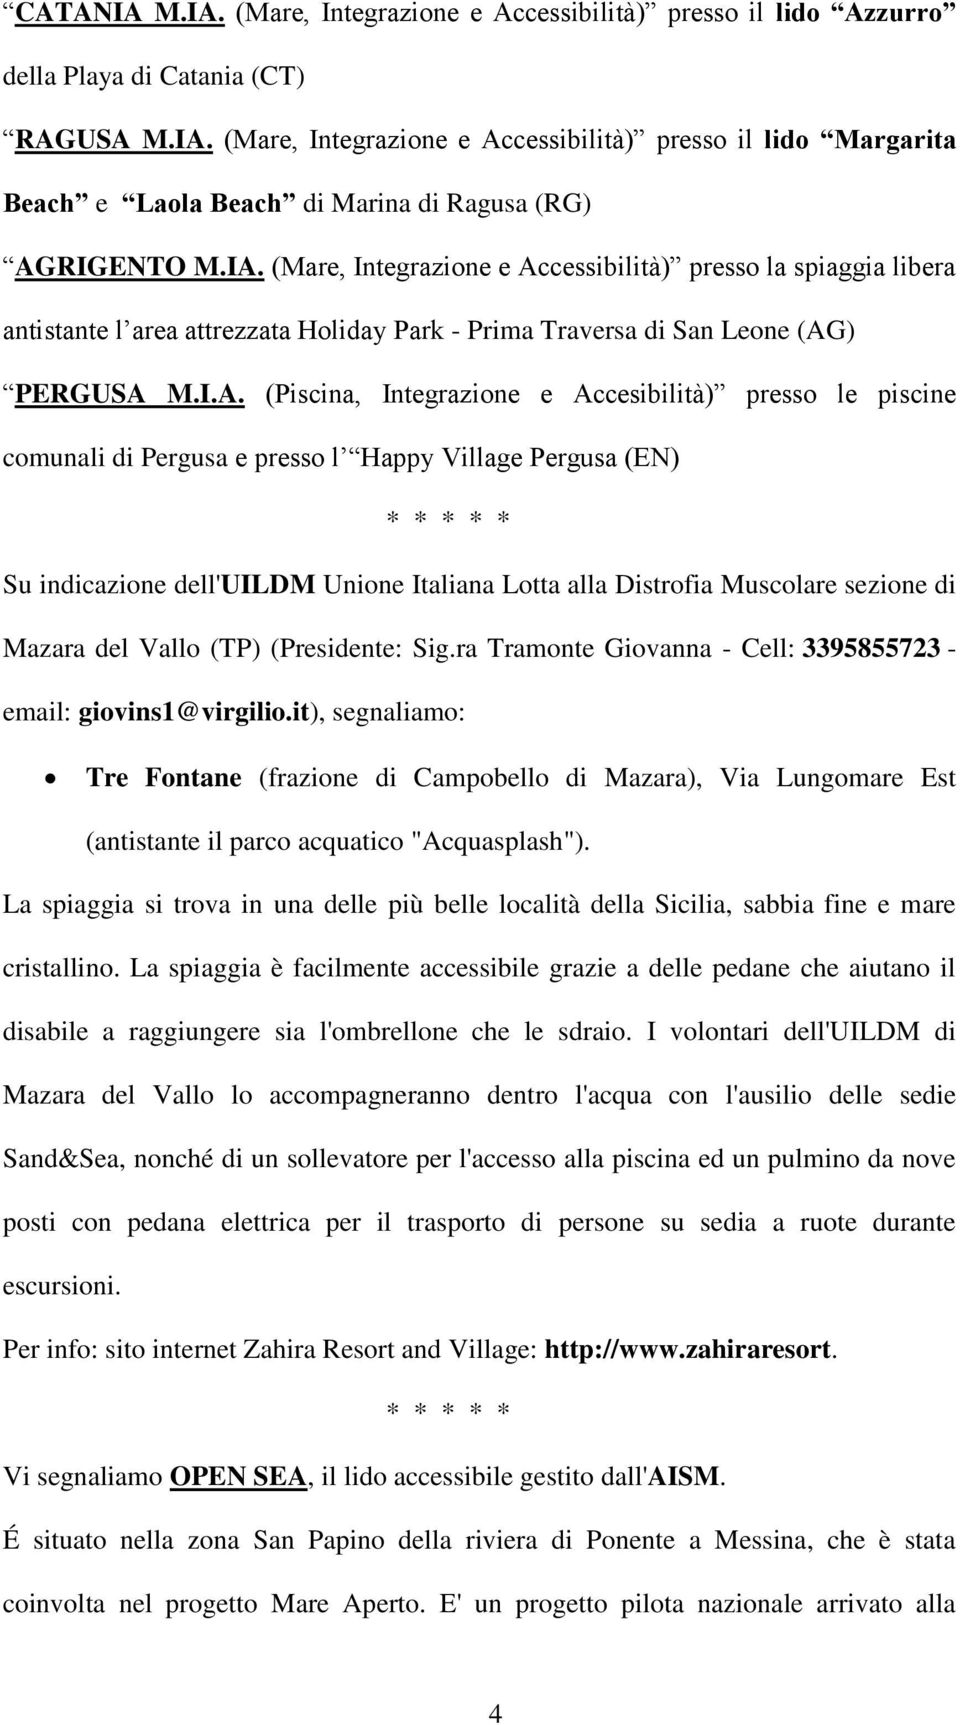 presso le piscine comunali di Pergusa e presso l Happy Village Pergusa (EN) Su indicazione dell'uildm Unione Italiana Lotta alla Distrofia Muscolare sezione di Mazara del Vallo (TP) (Presidente: Sig.